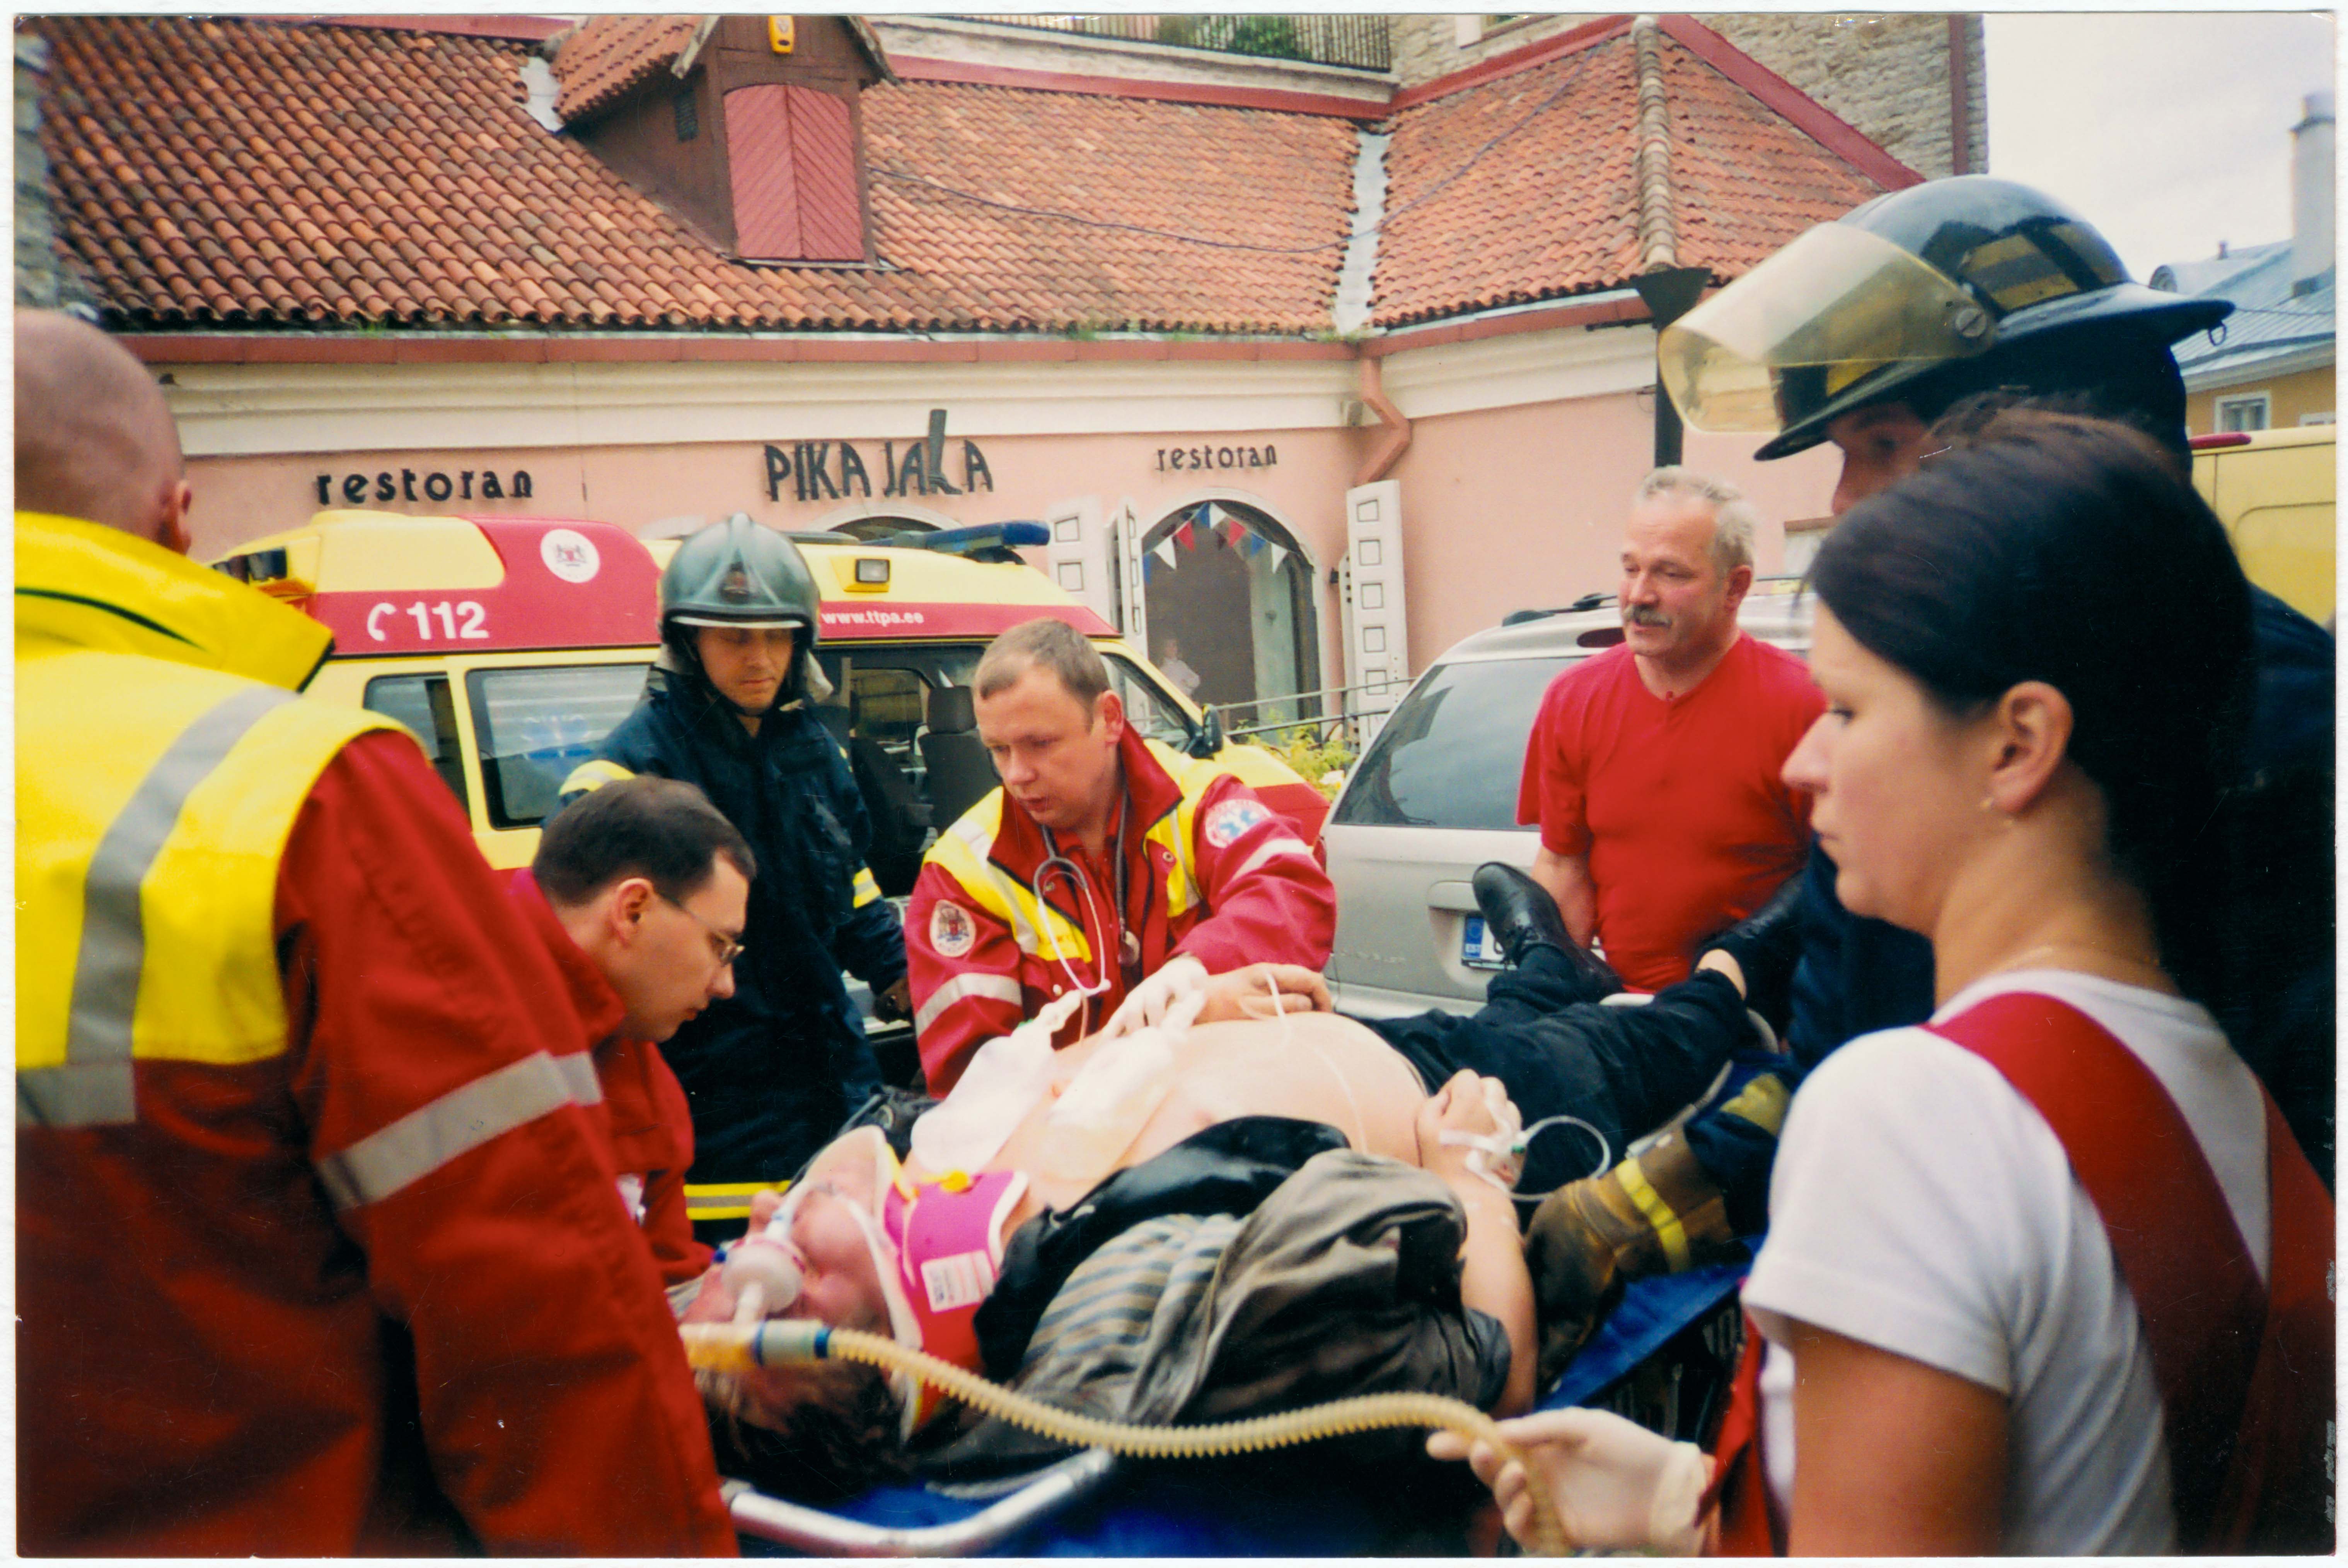 Õnnetus Tallinnas Pikk jalg 9 ees